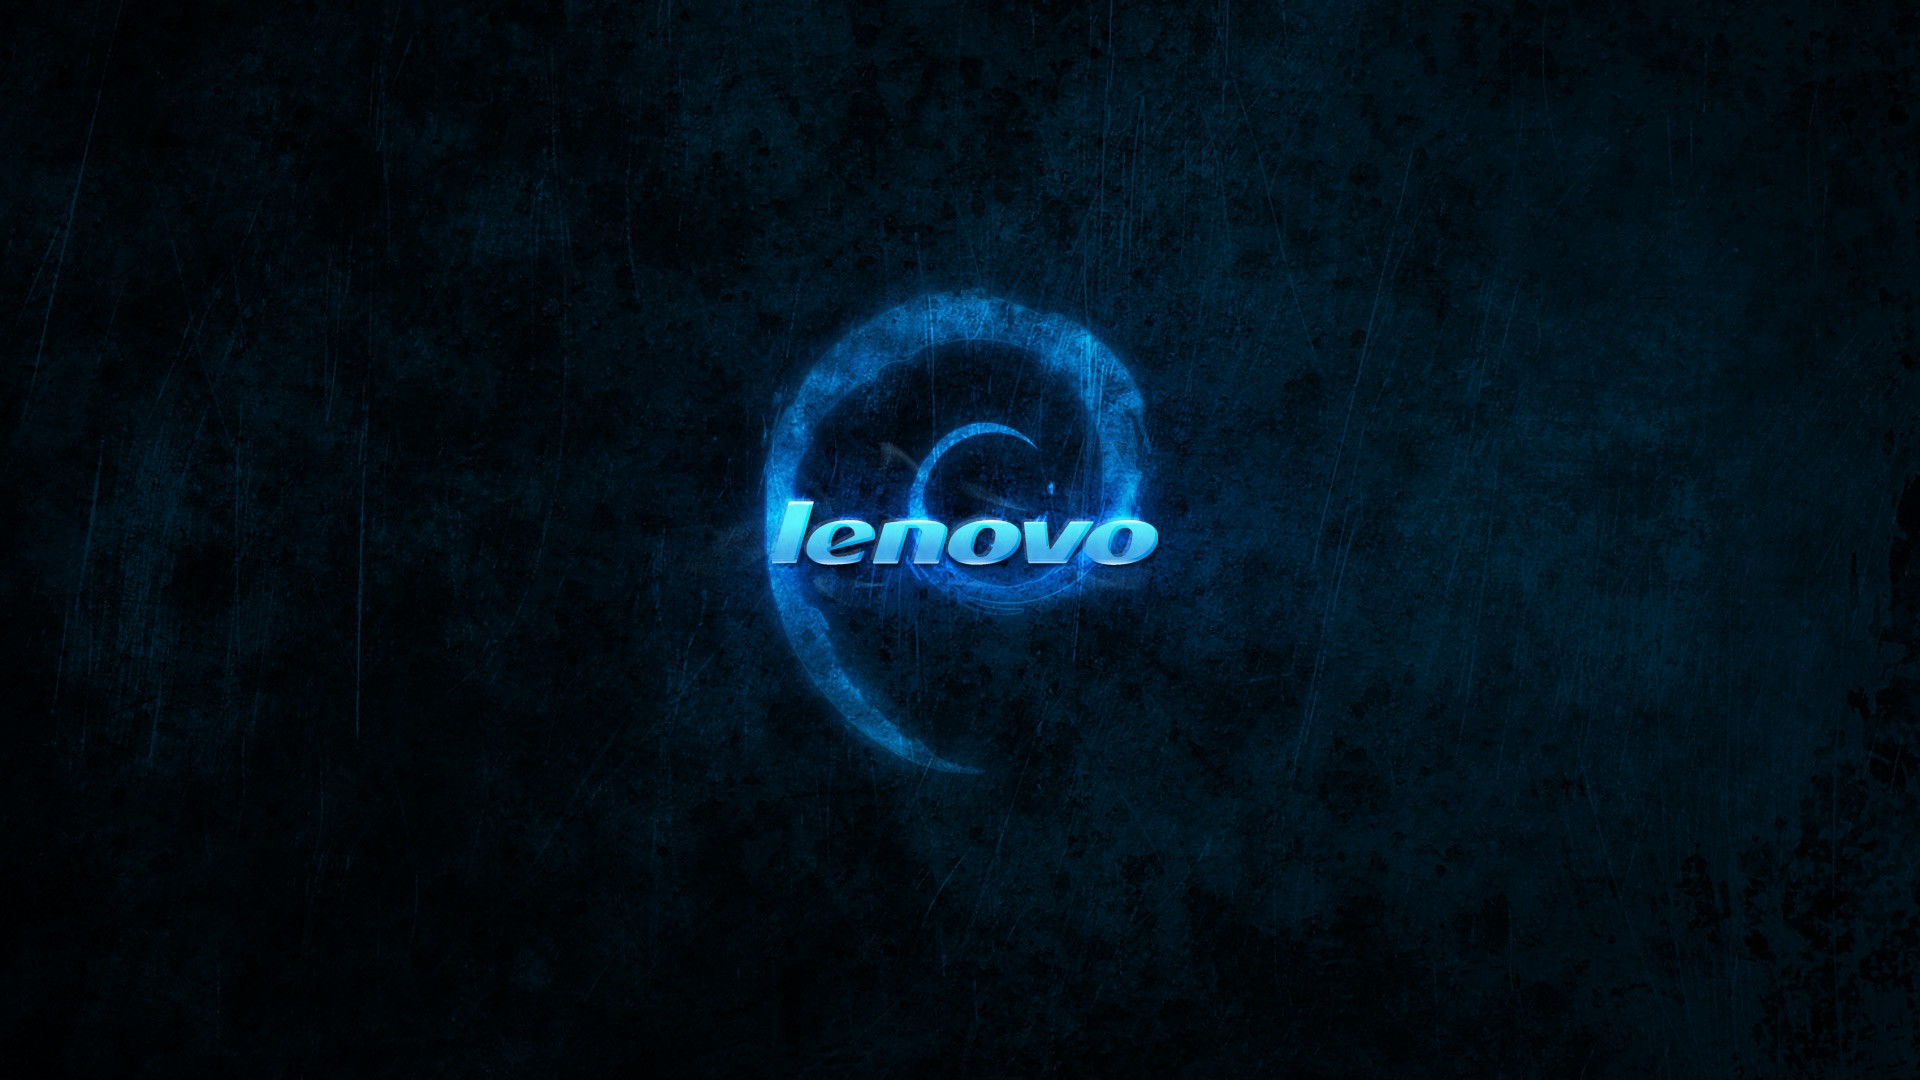 Télécharger des fonds d'écran Lenovo HD